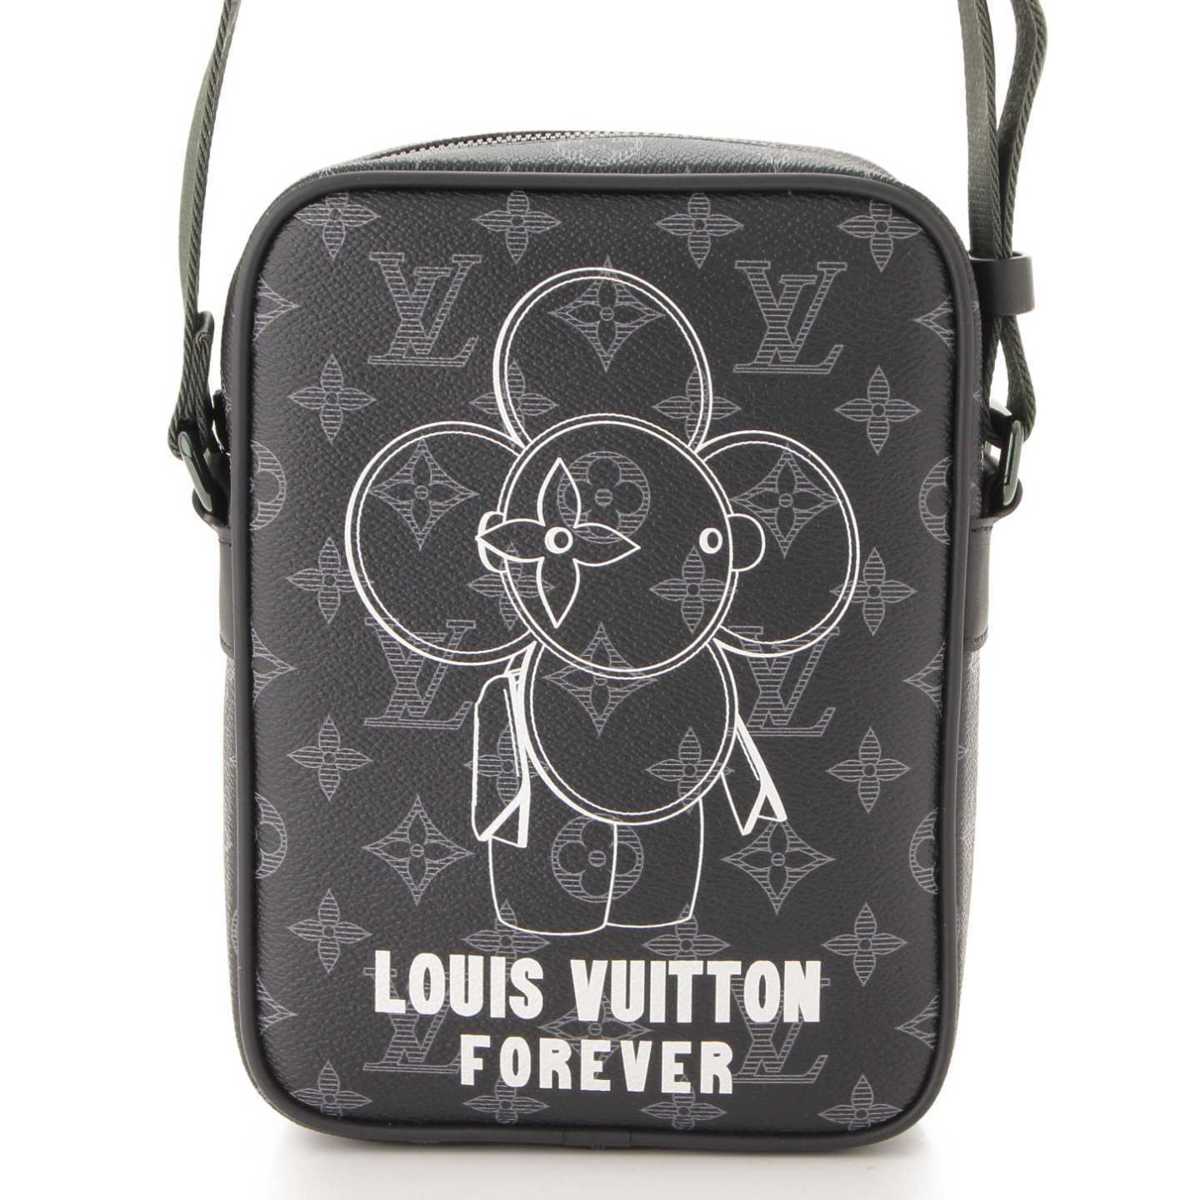 ルイヴィトン(Louis Vuitton) モノグラムエクリプス ダヌーブPM ヴィヴィエンヌ 限定 ショルダーバッグ M43677